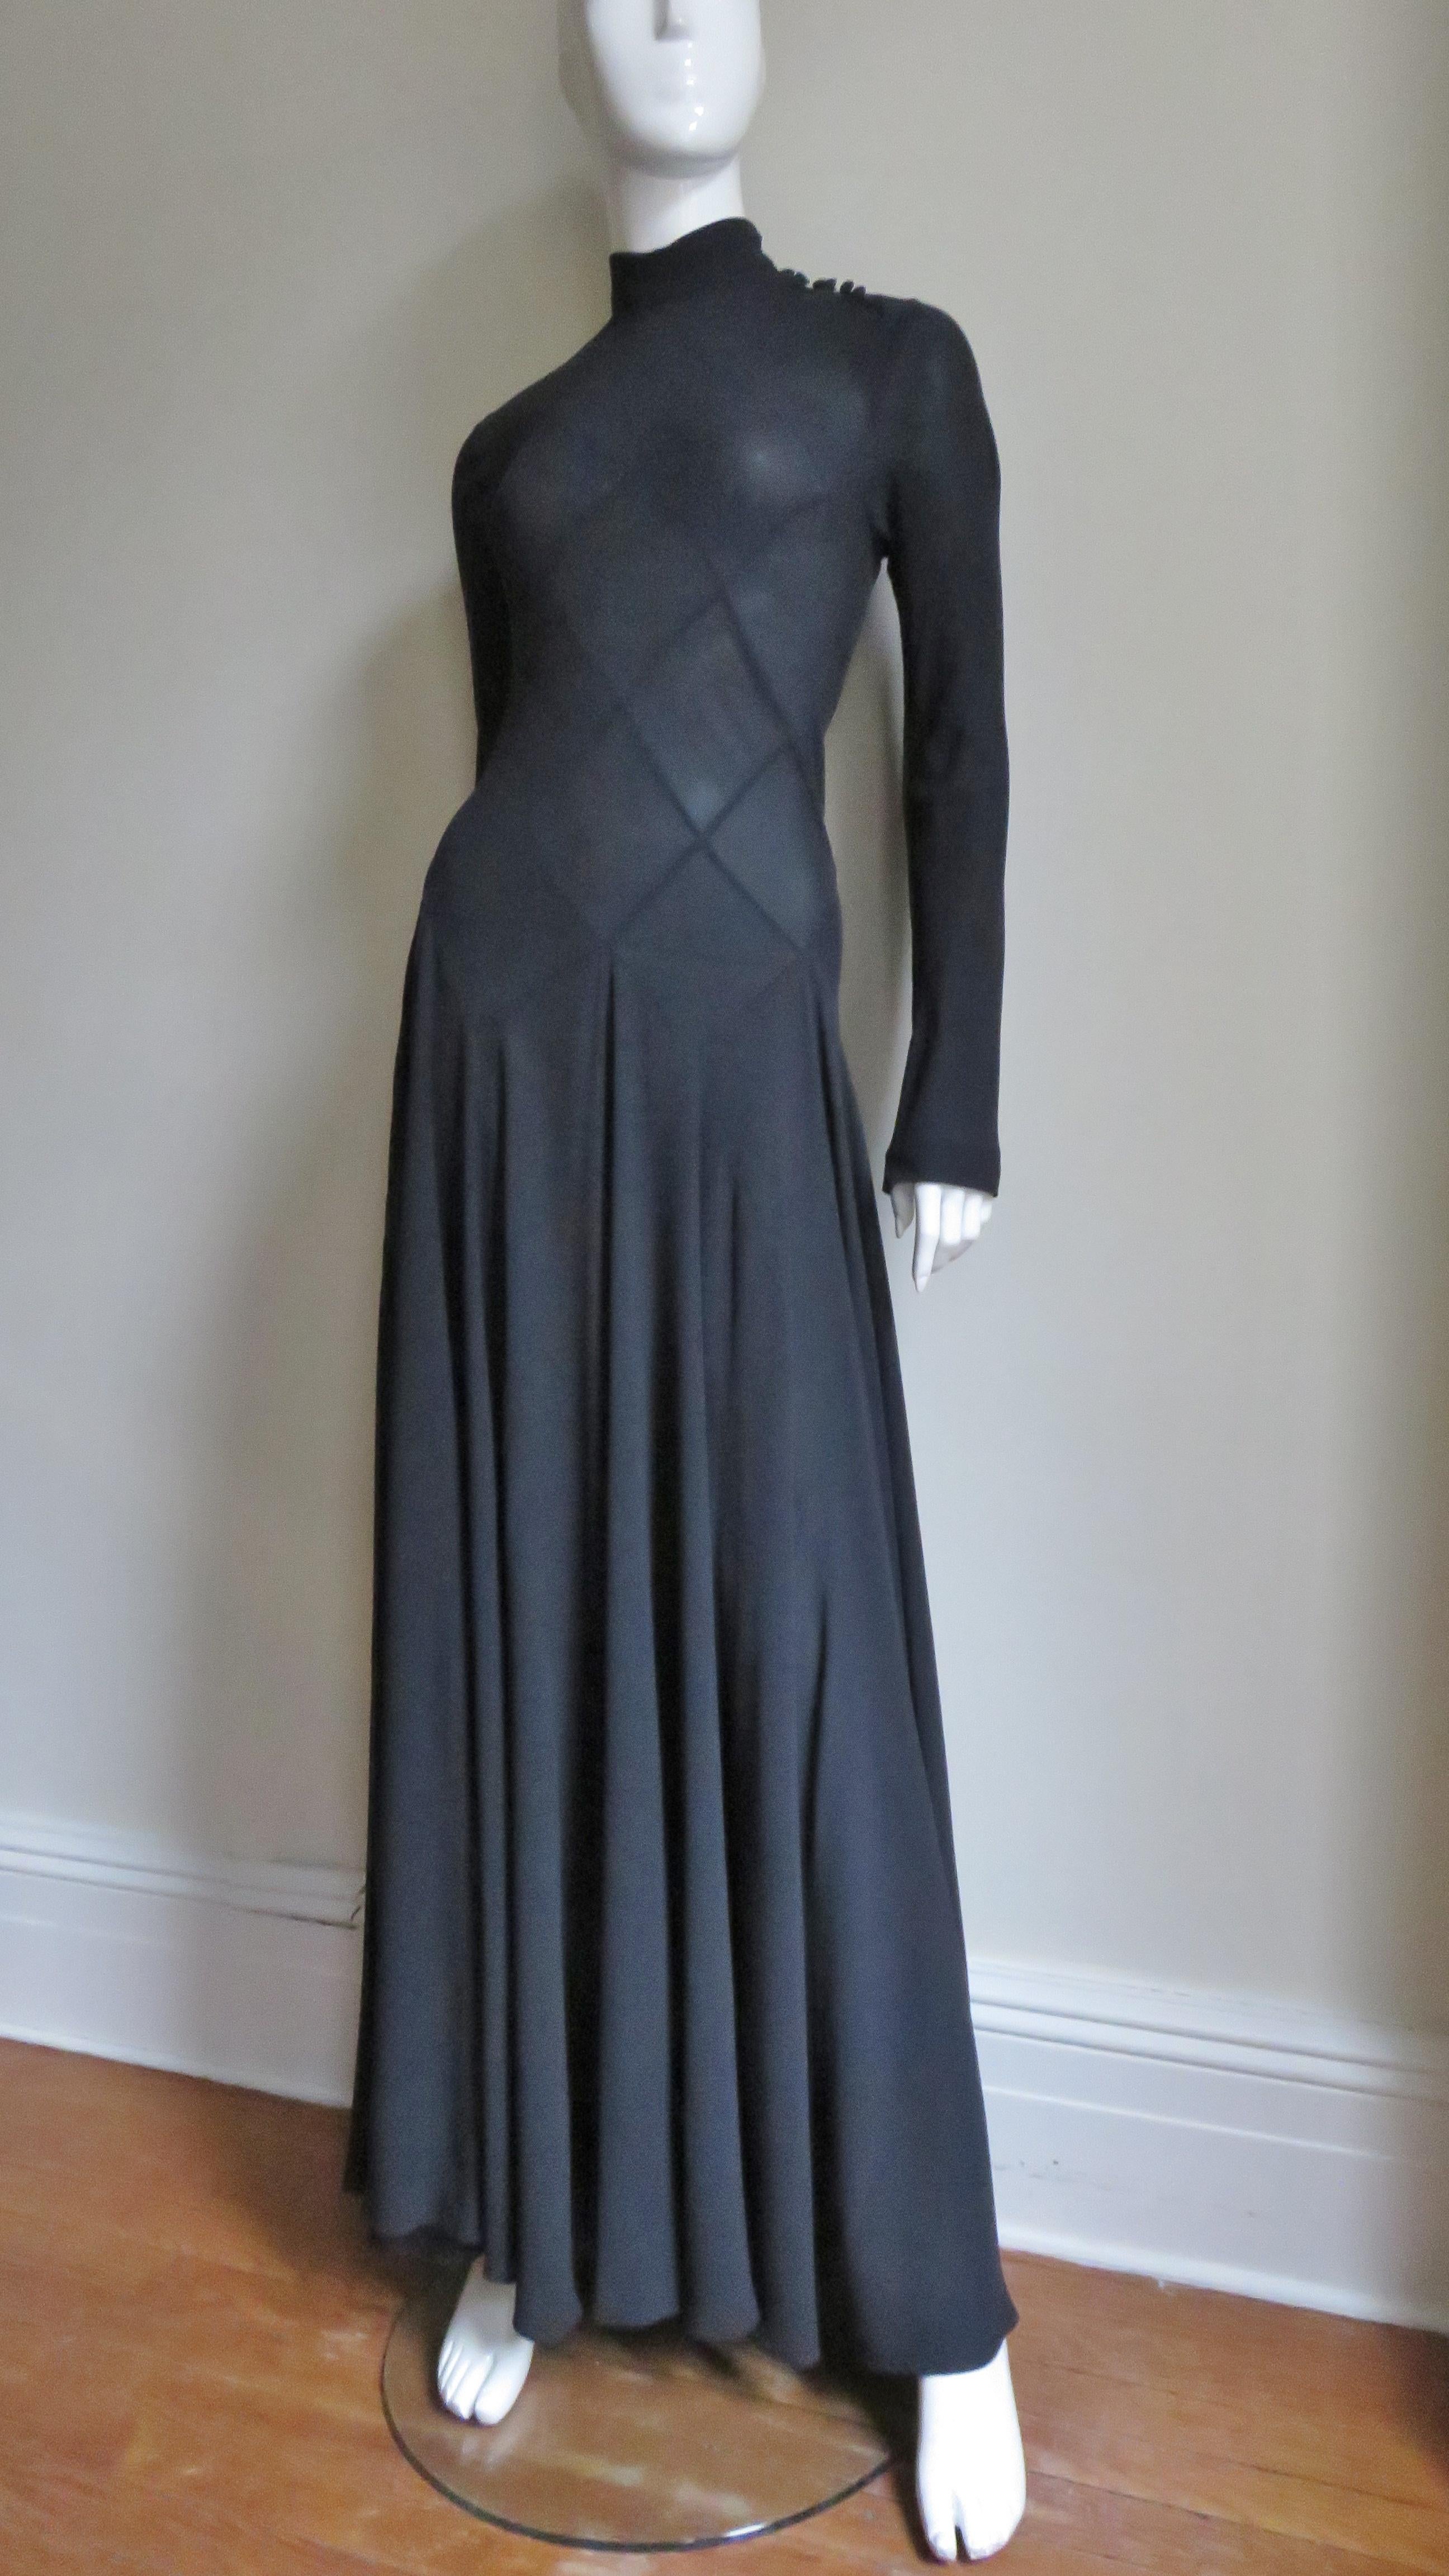 Une magnifique robe noire en soie fine de Calvin Klein. Le détail est étonnant dans l'assemblage complexe de formes en diamant formant le corsage jusqu'aux hanches. Il est doté d'un col montant et de petits boutons autocollants le long du cou et des